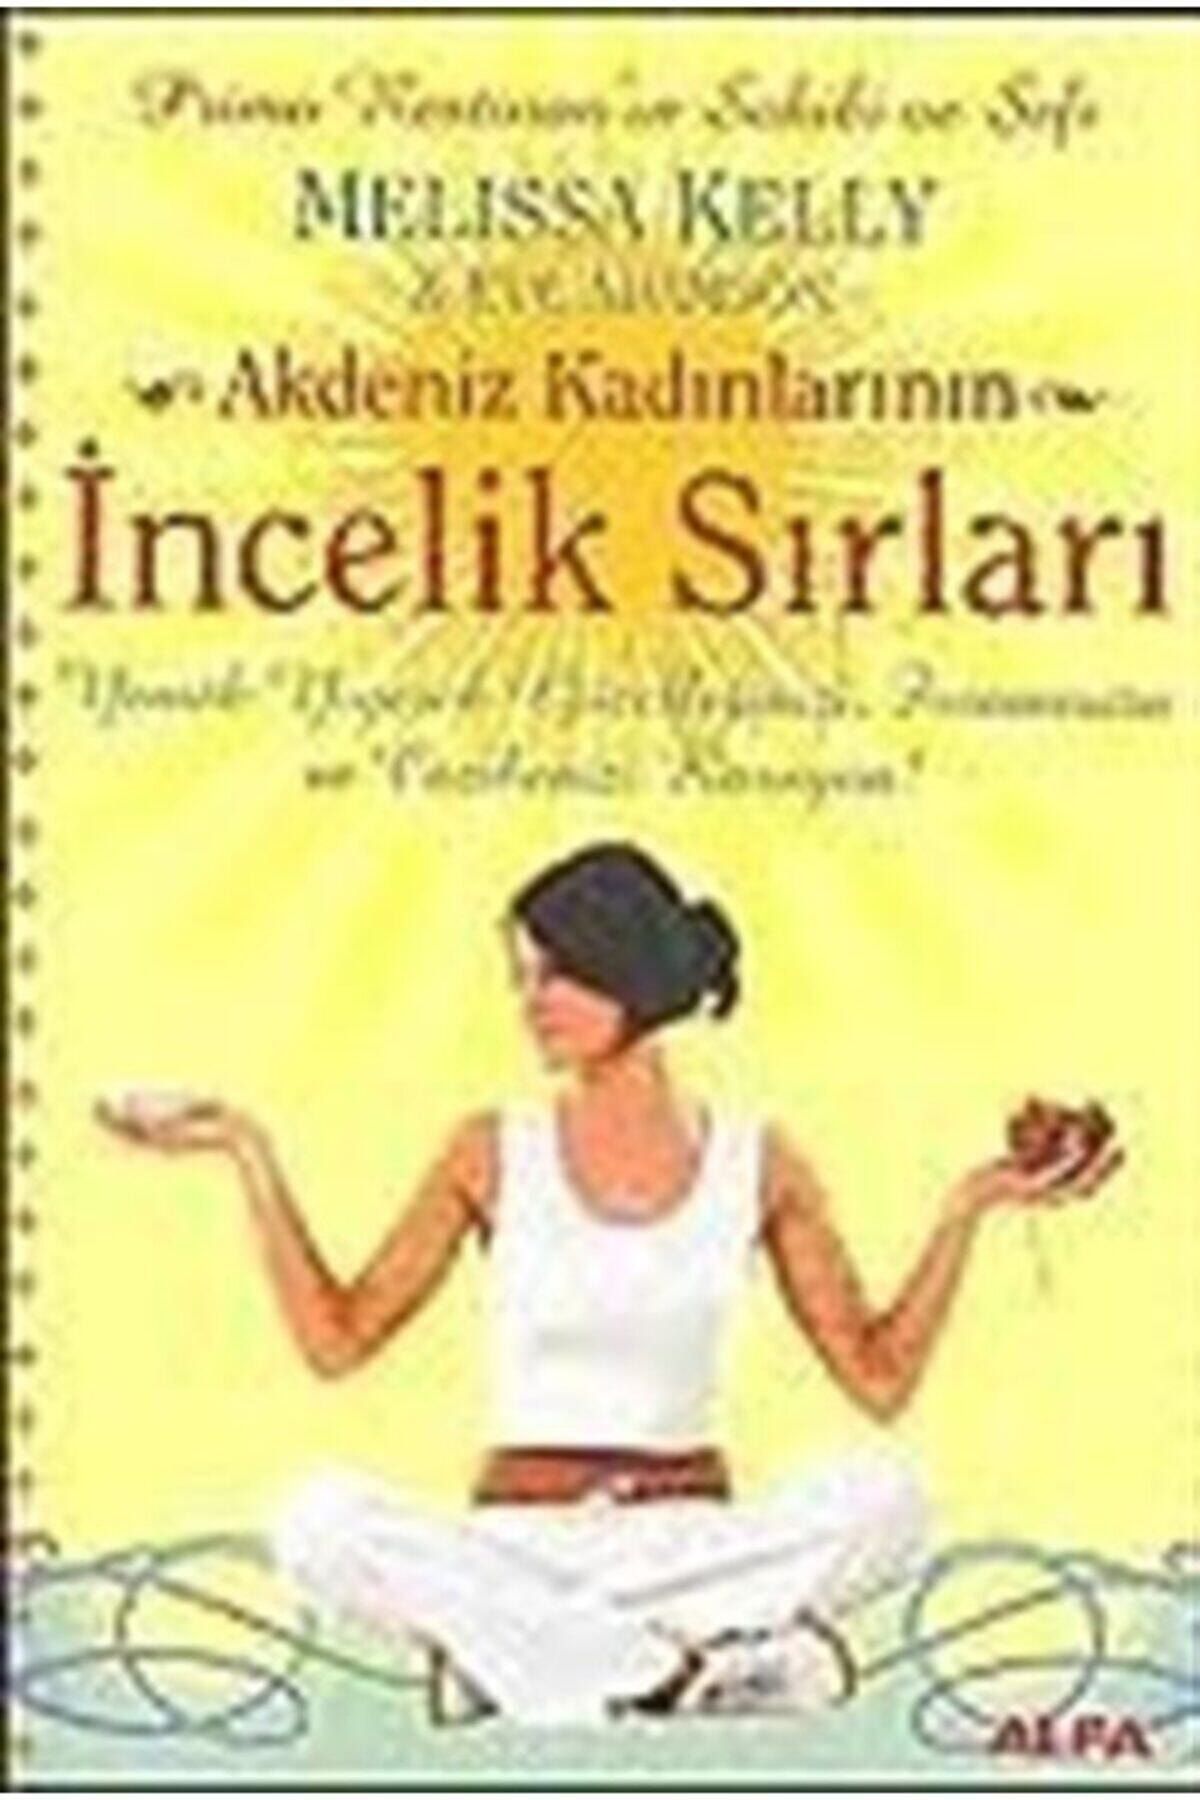 Alfa Yayınları Akdeniz Kadınlarının Incelik Sırları